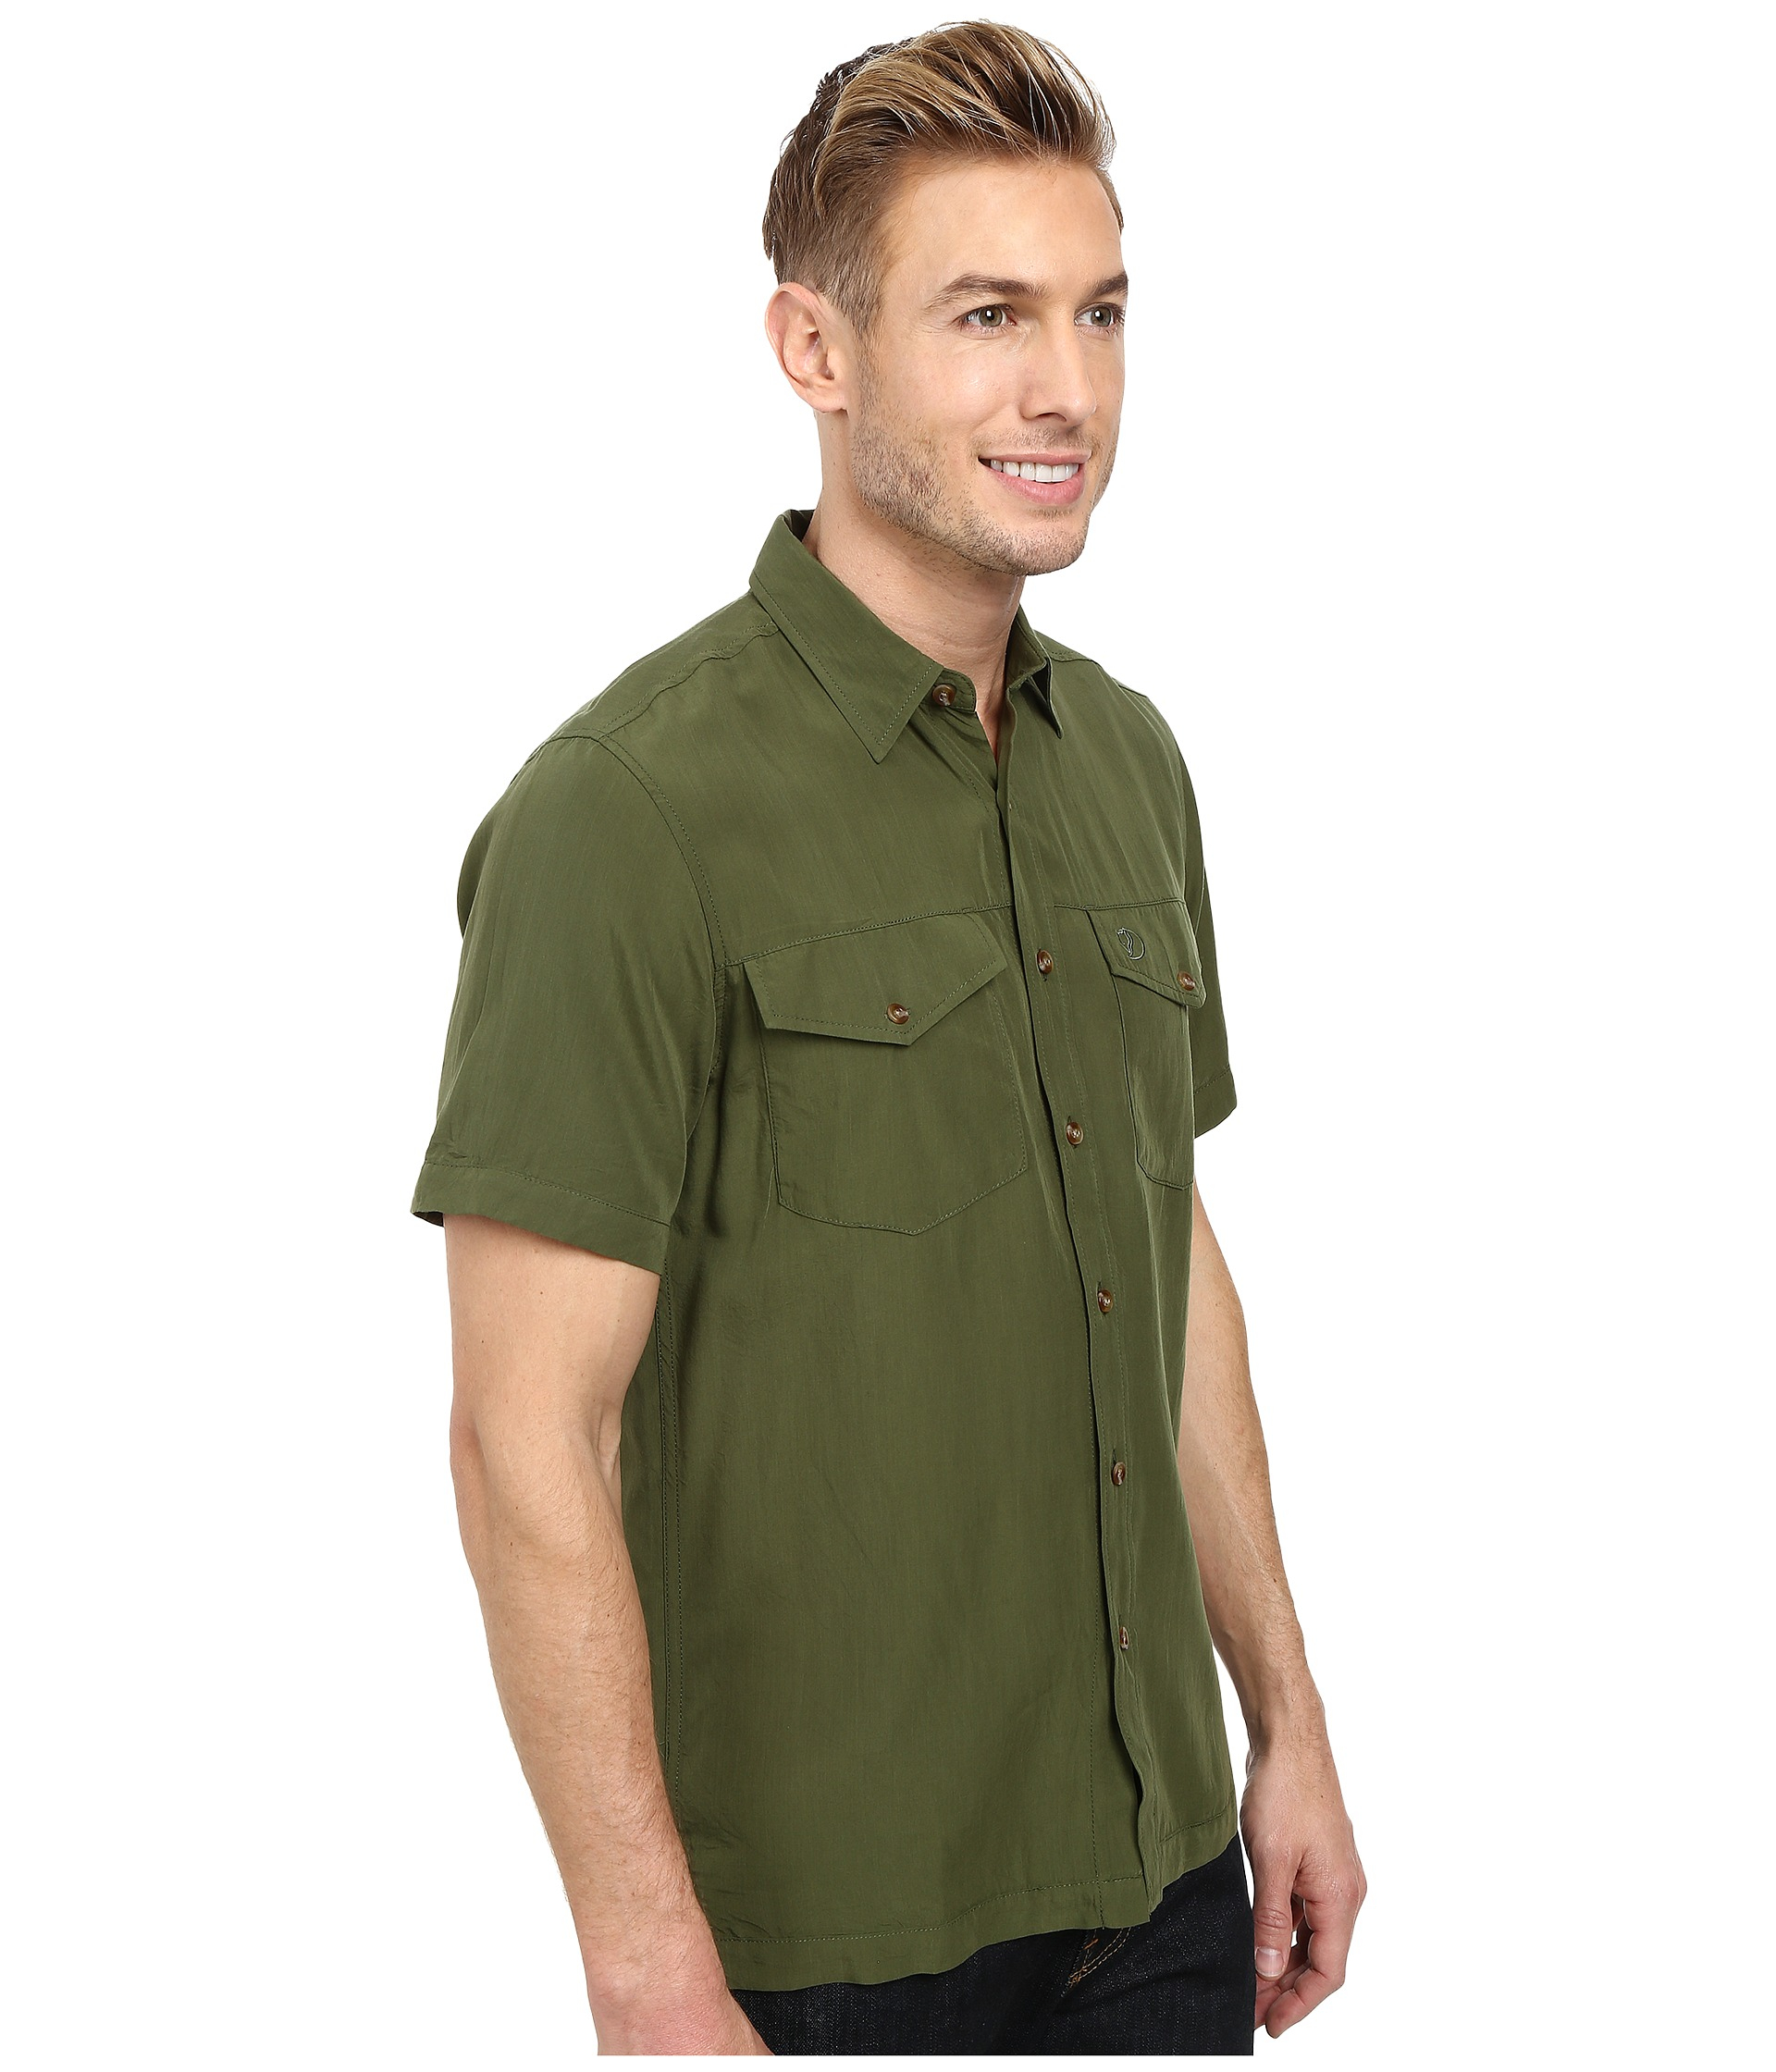 Fjallraven Abisko Vent Short Sleeve Shirt in Green for Men - Lyst